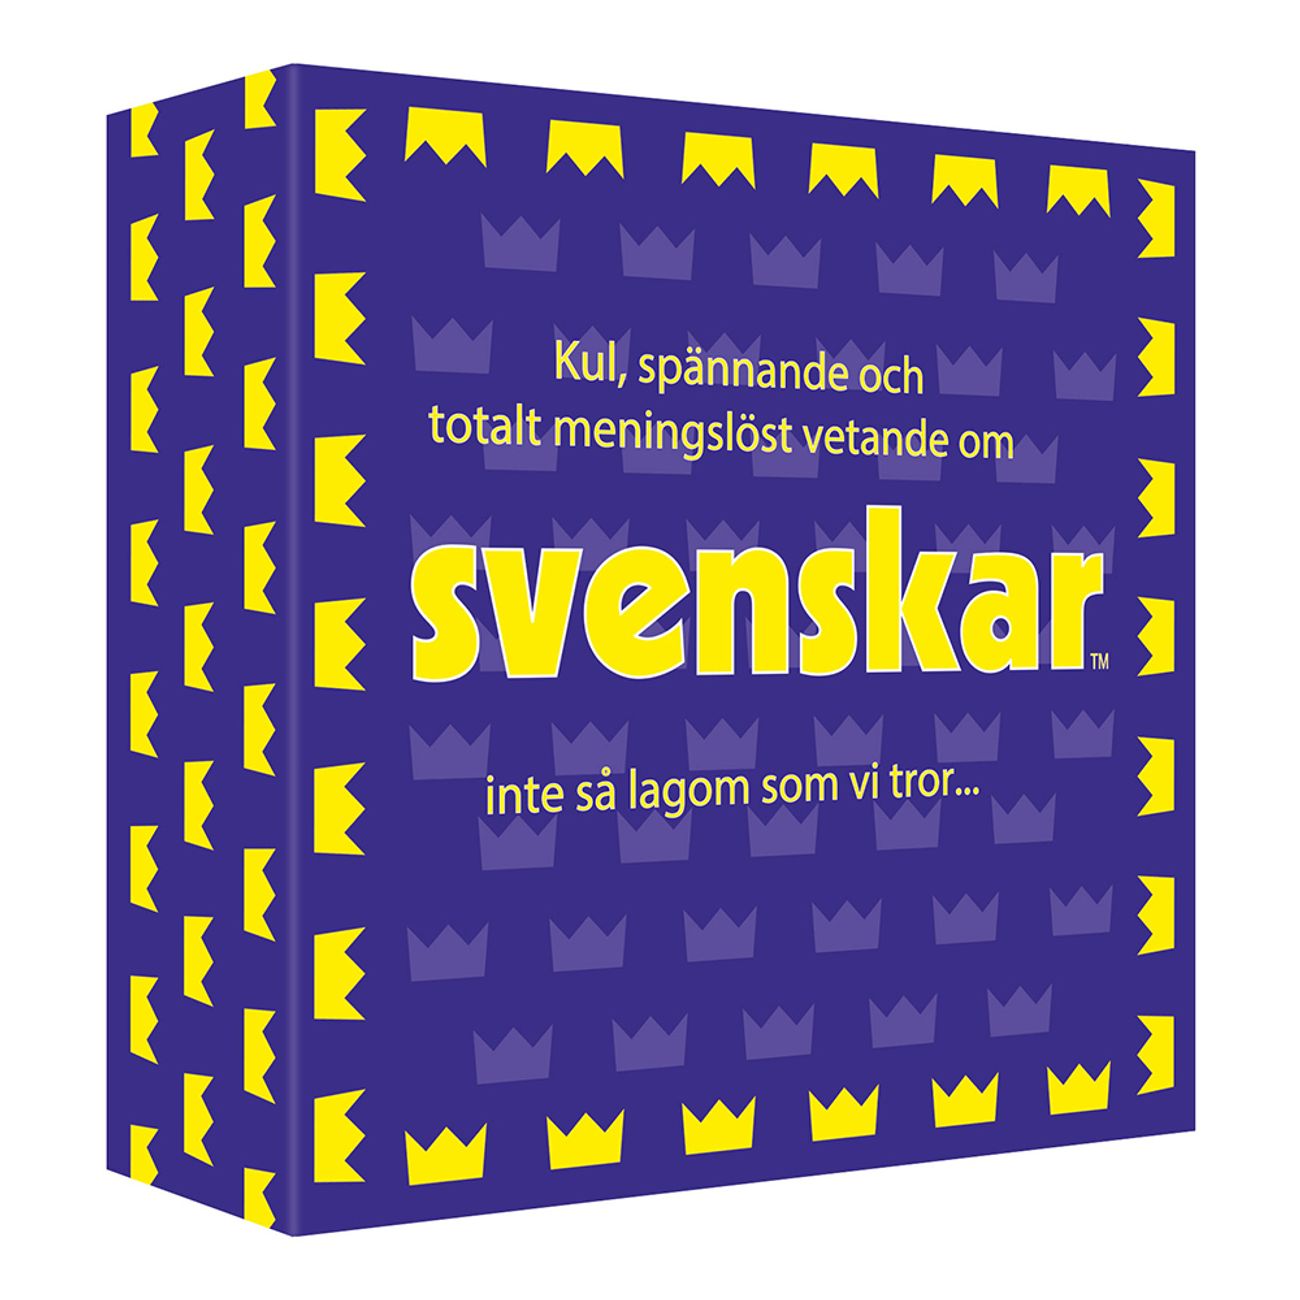 svenskar-fragespel-2